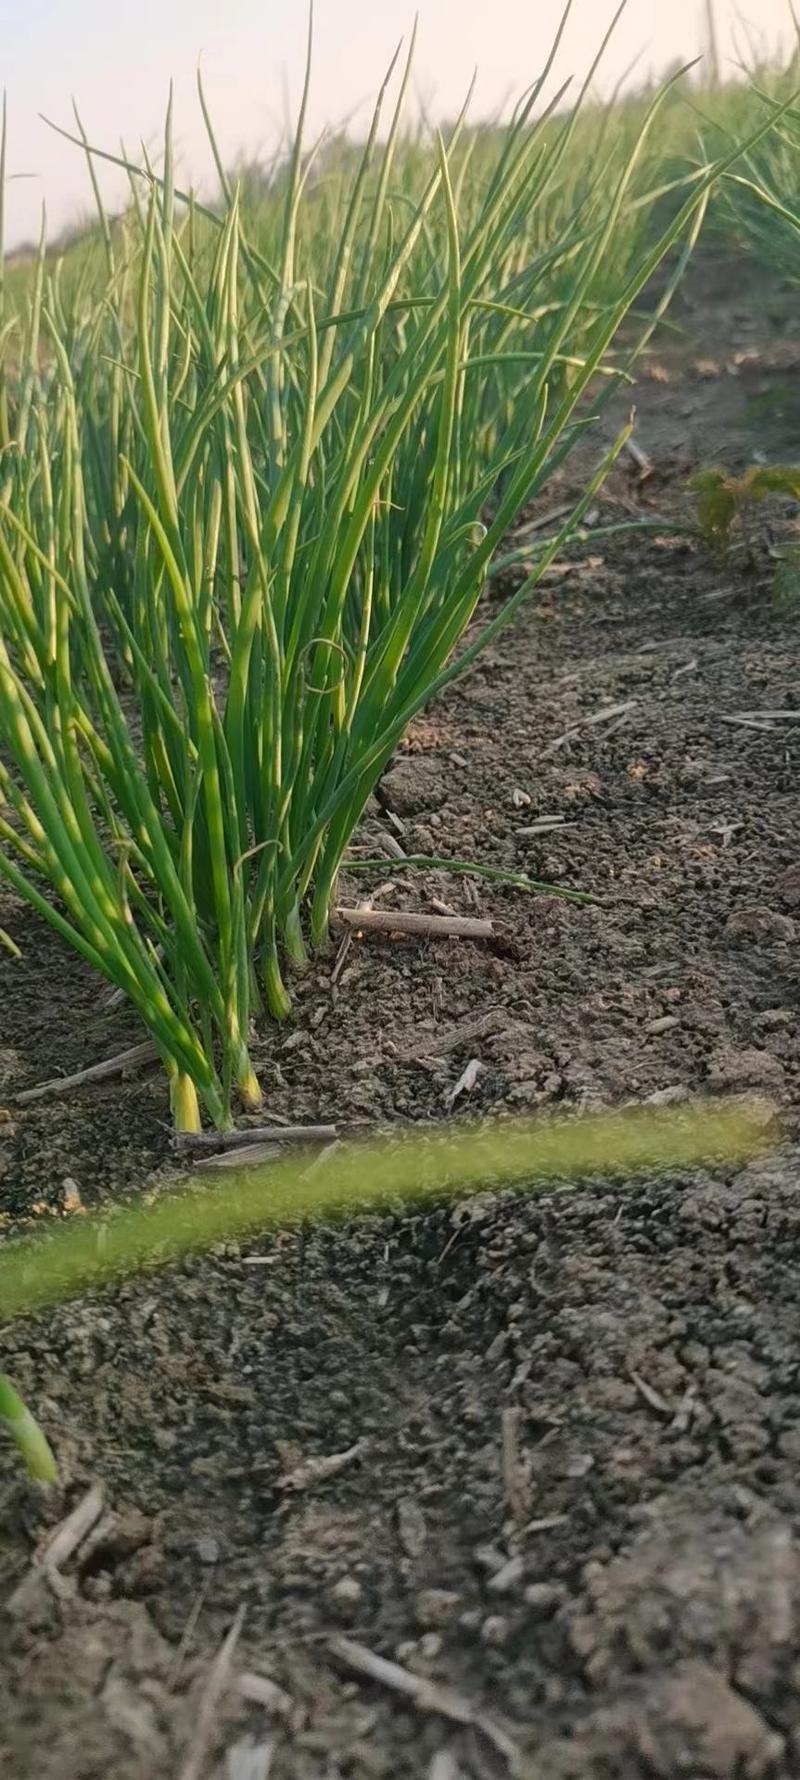 丰县进口高产洋葱种子育苗种植基地